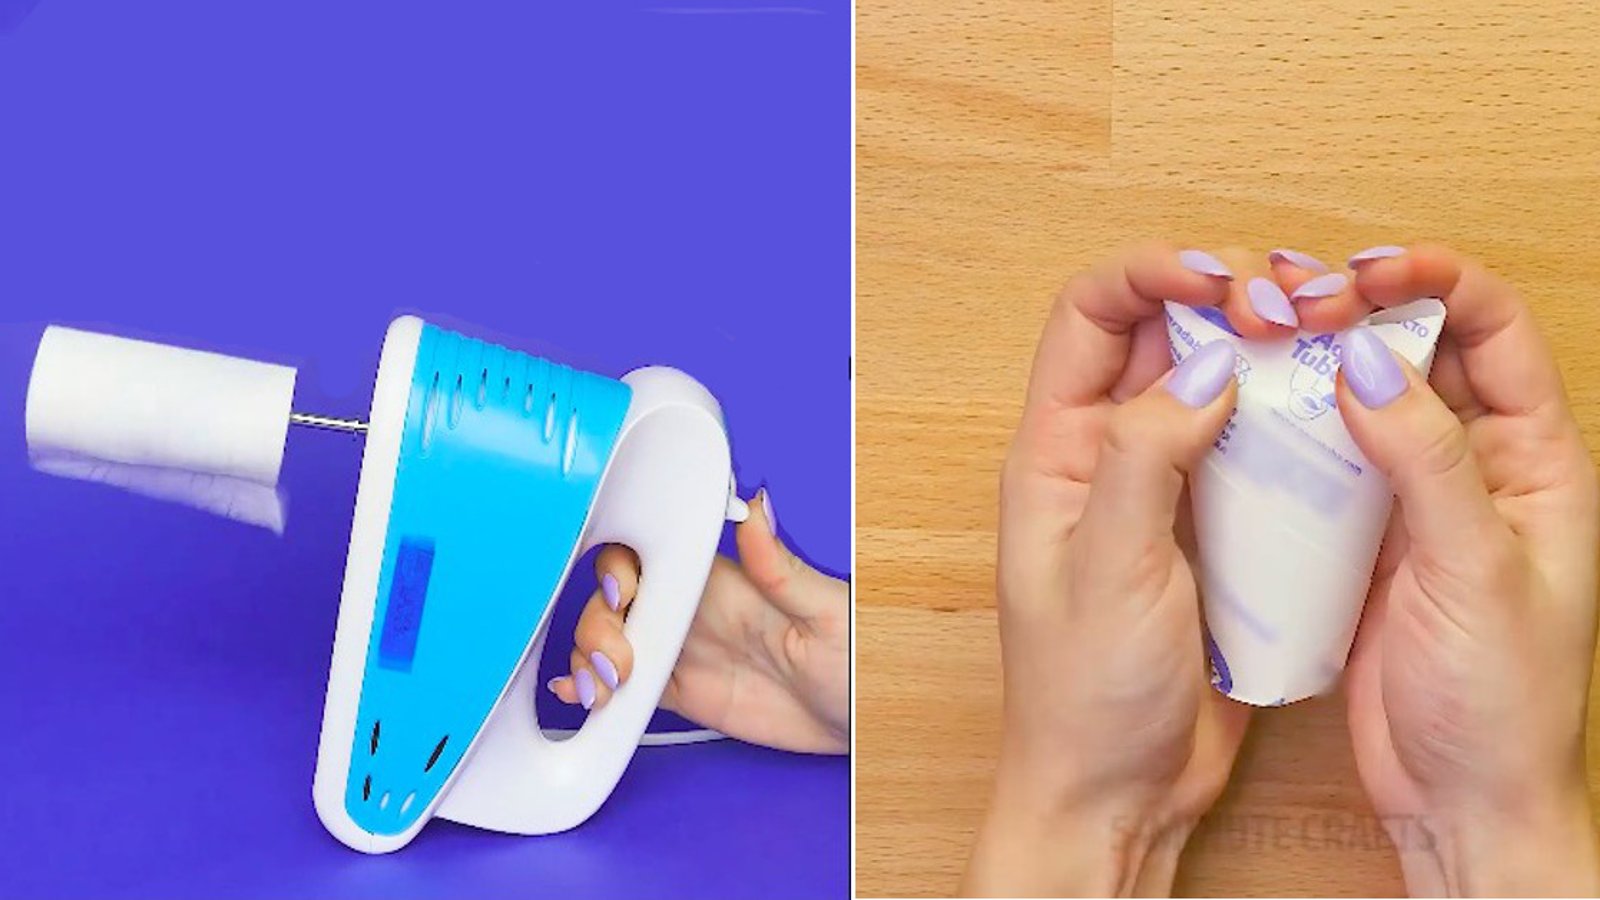 8 projets ou astuces que vous pouvez réaliser grâce à des rouleaux de papier hygiénique